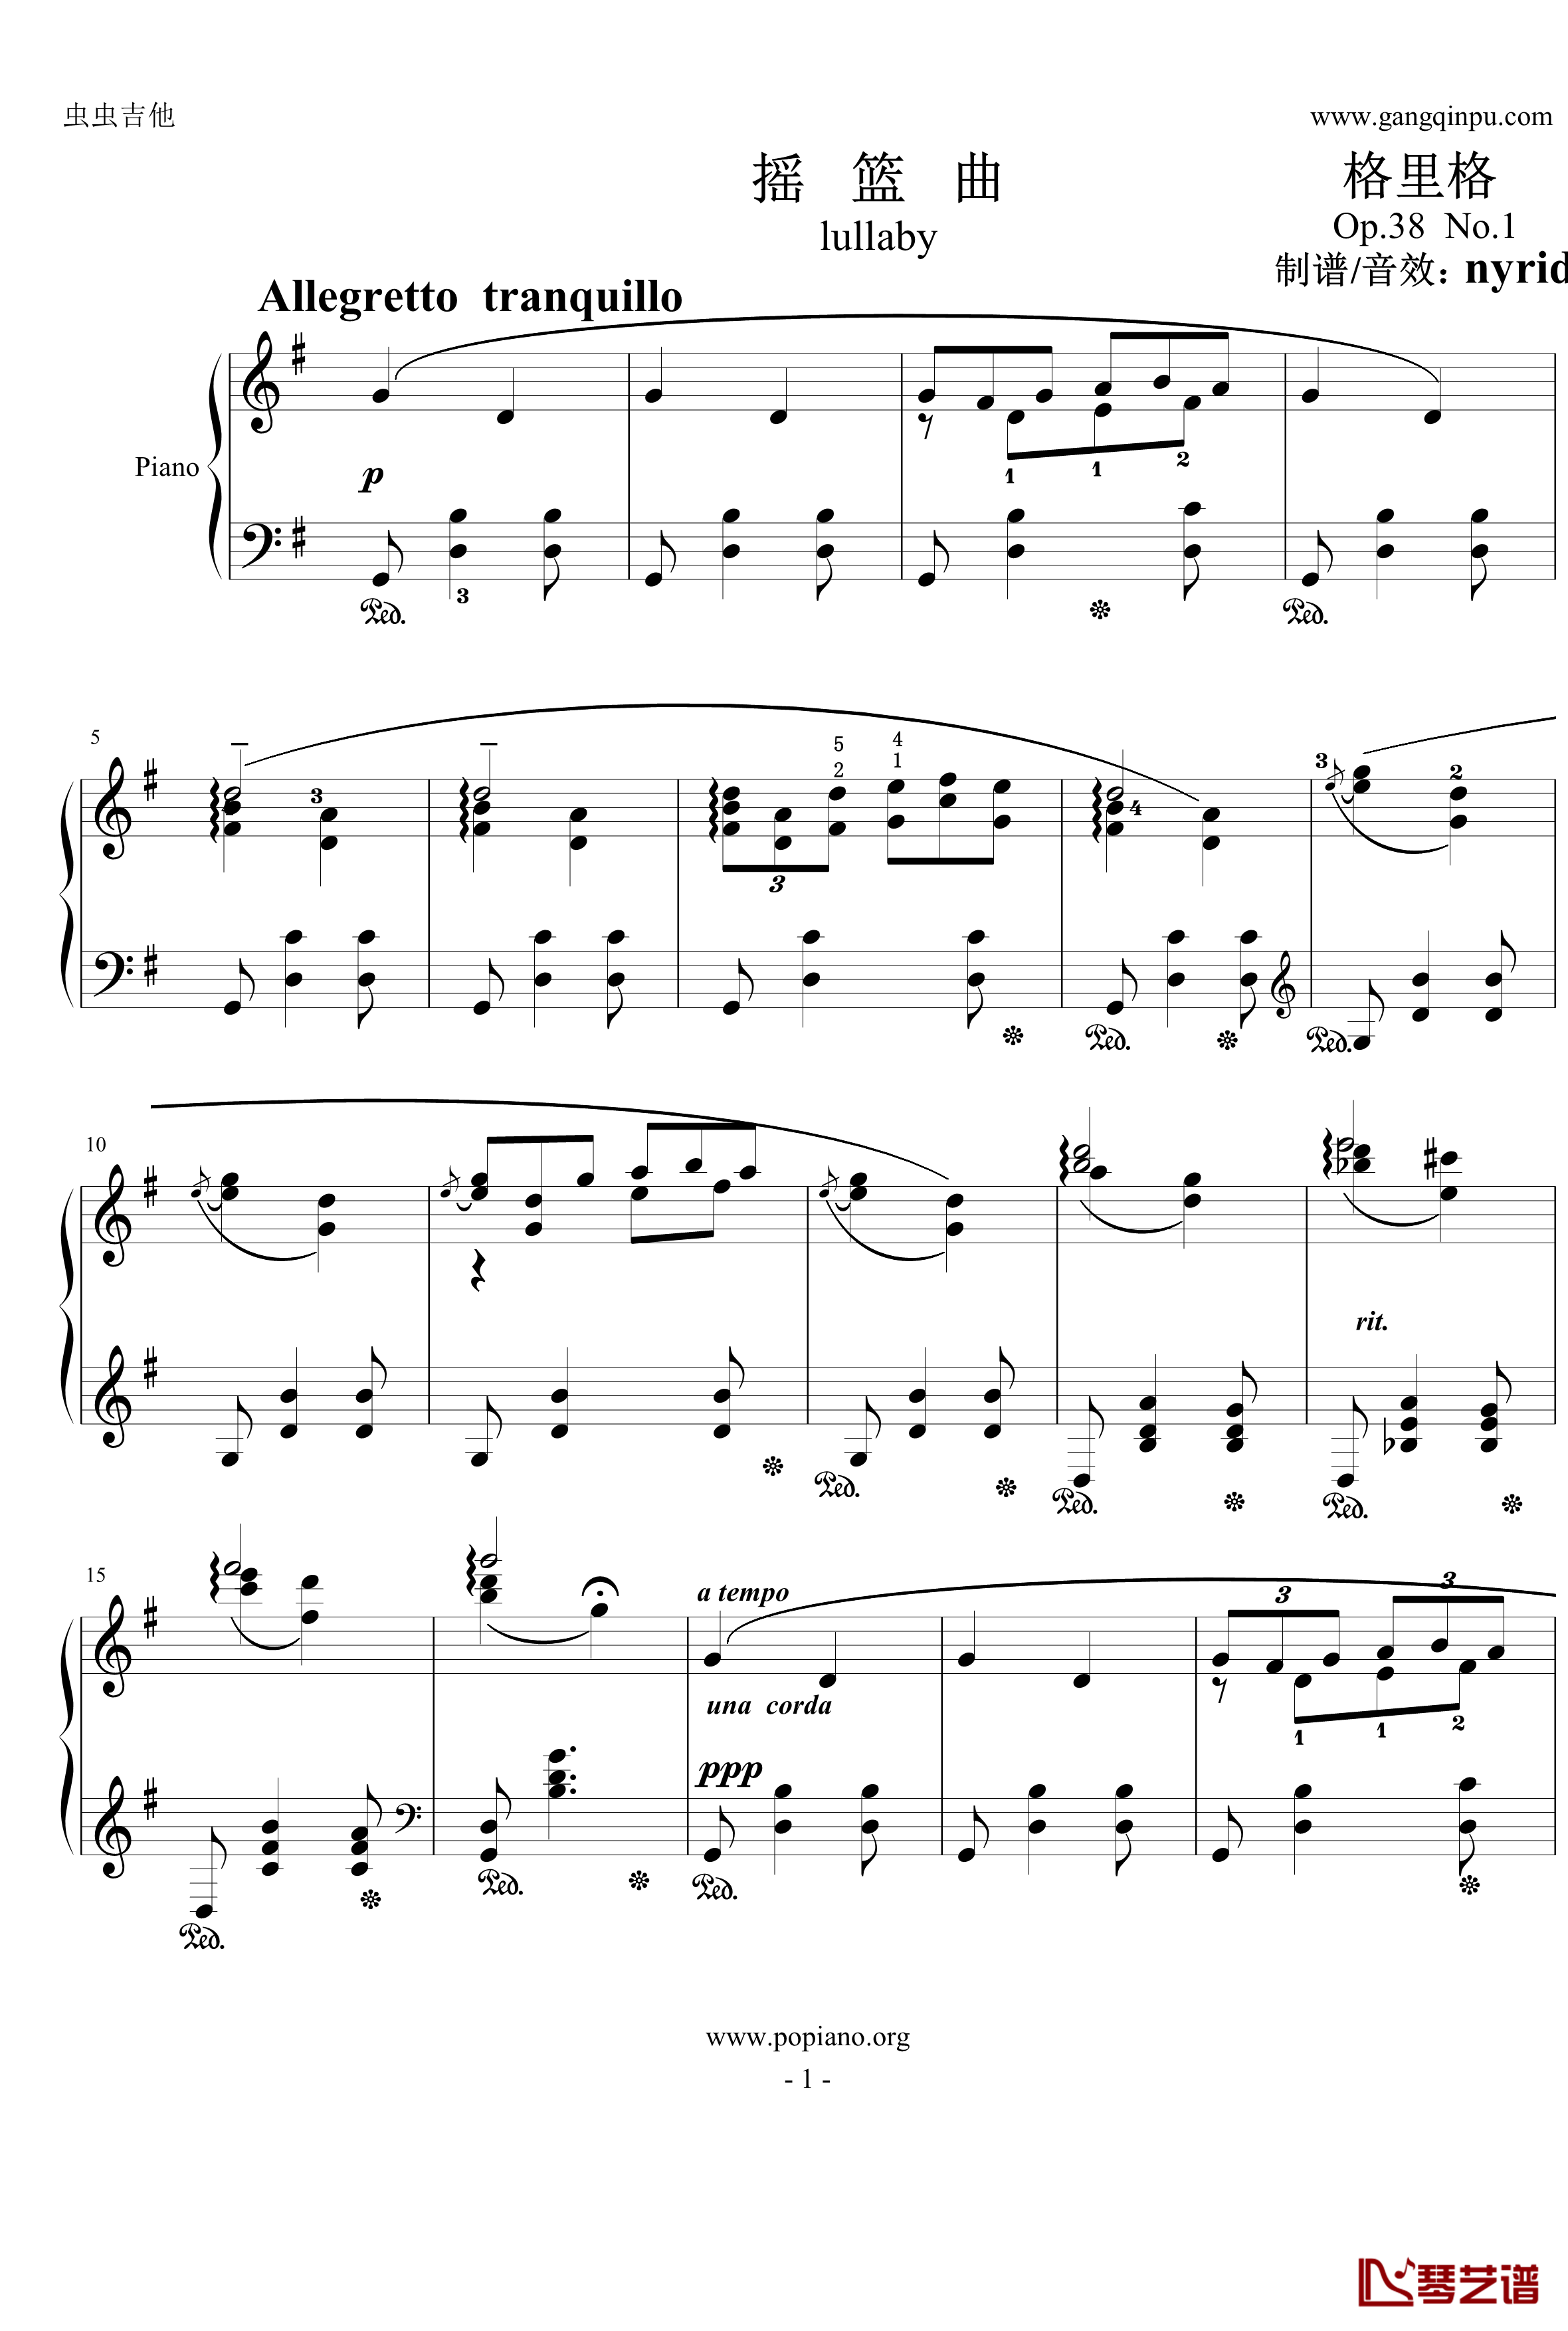 摇篮曲钢琴谱-格里格1